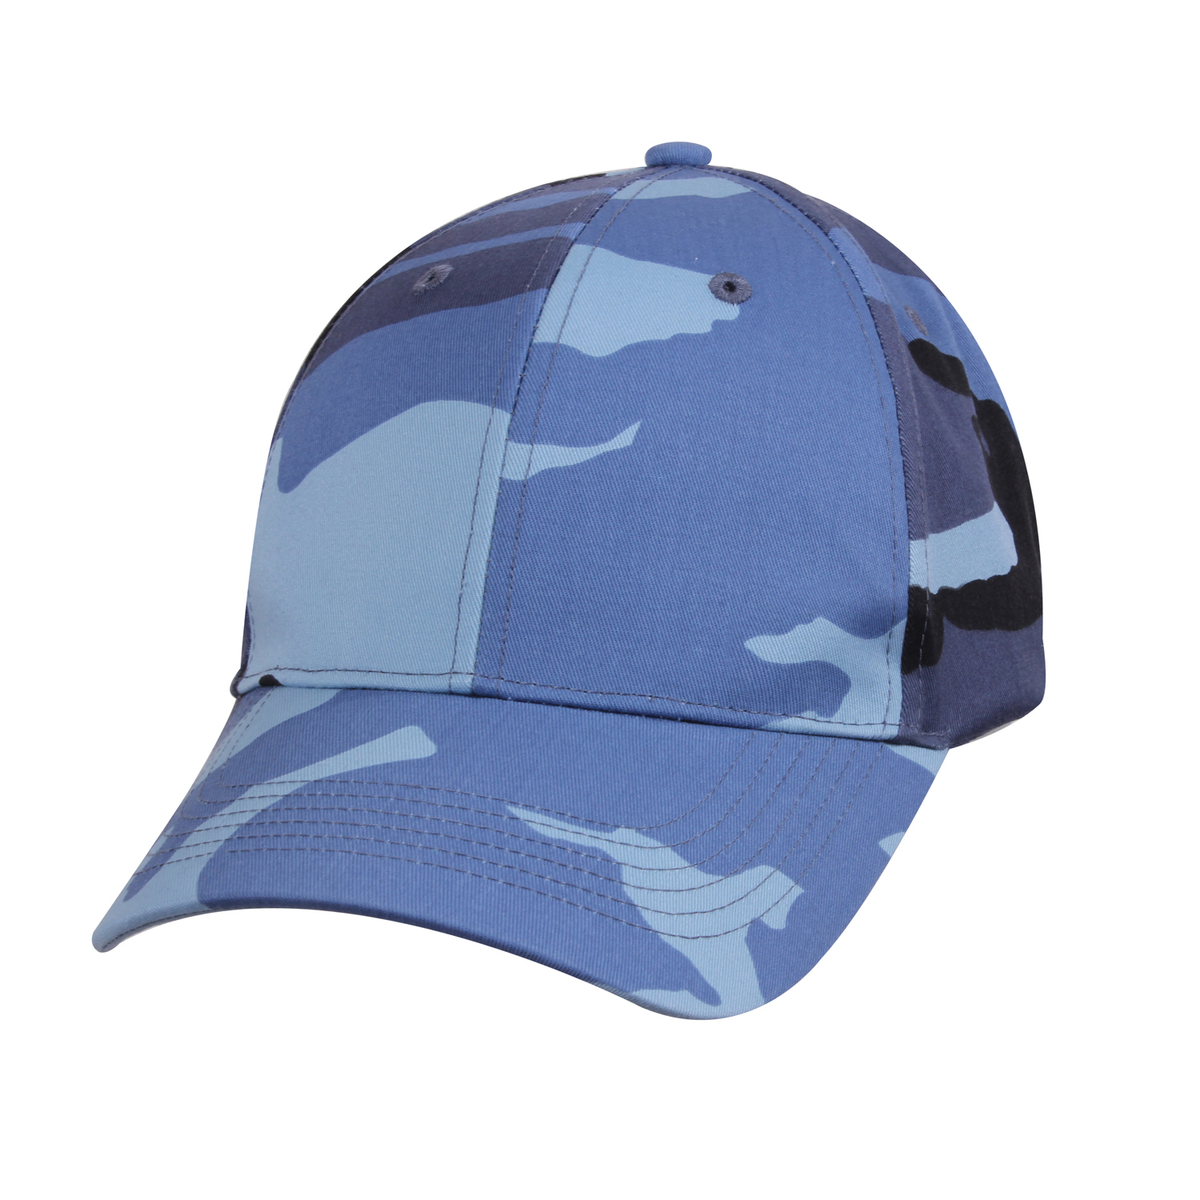 Rothco Color Camo Supreme Low Profile Cap - SKY BLUE Camo